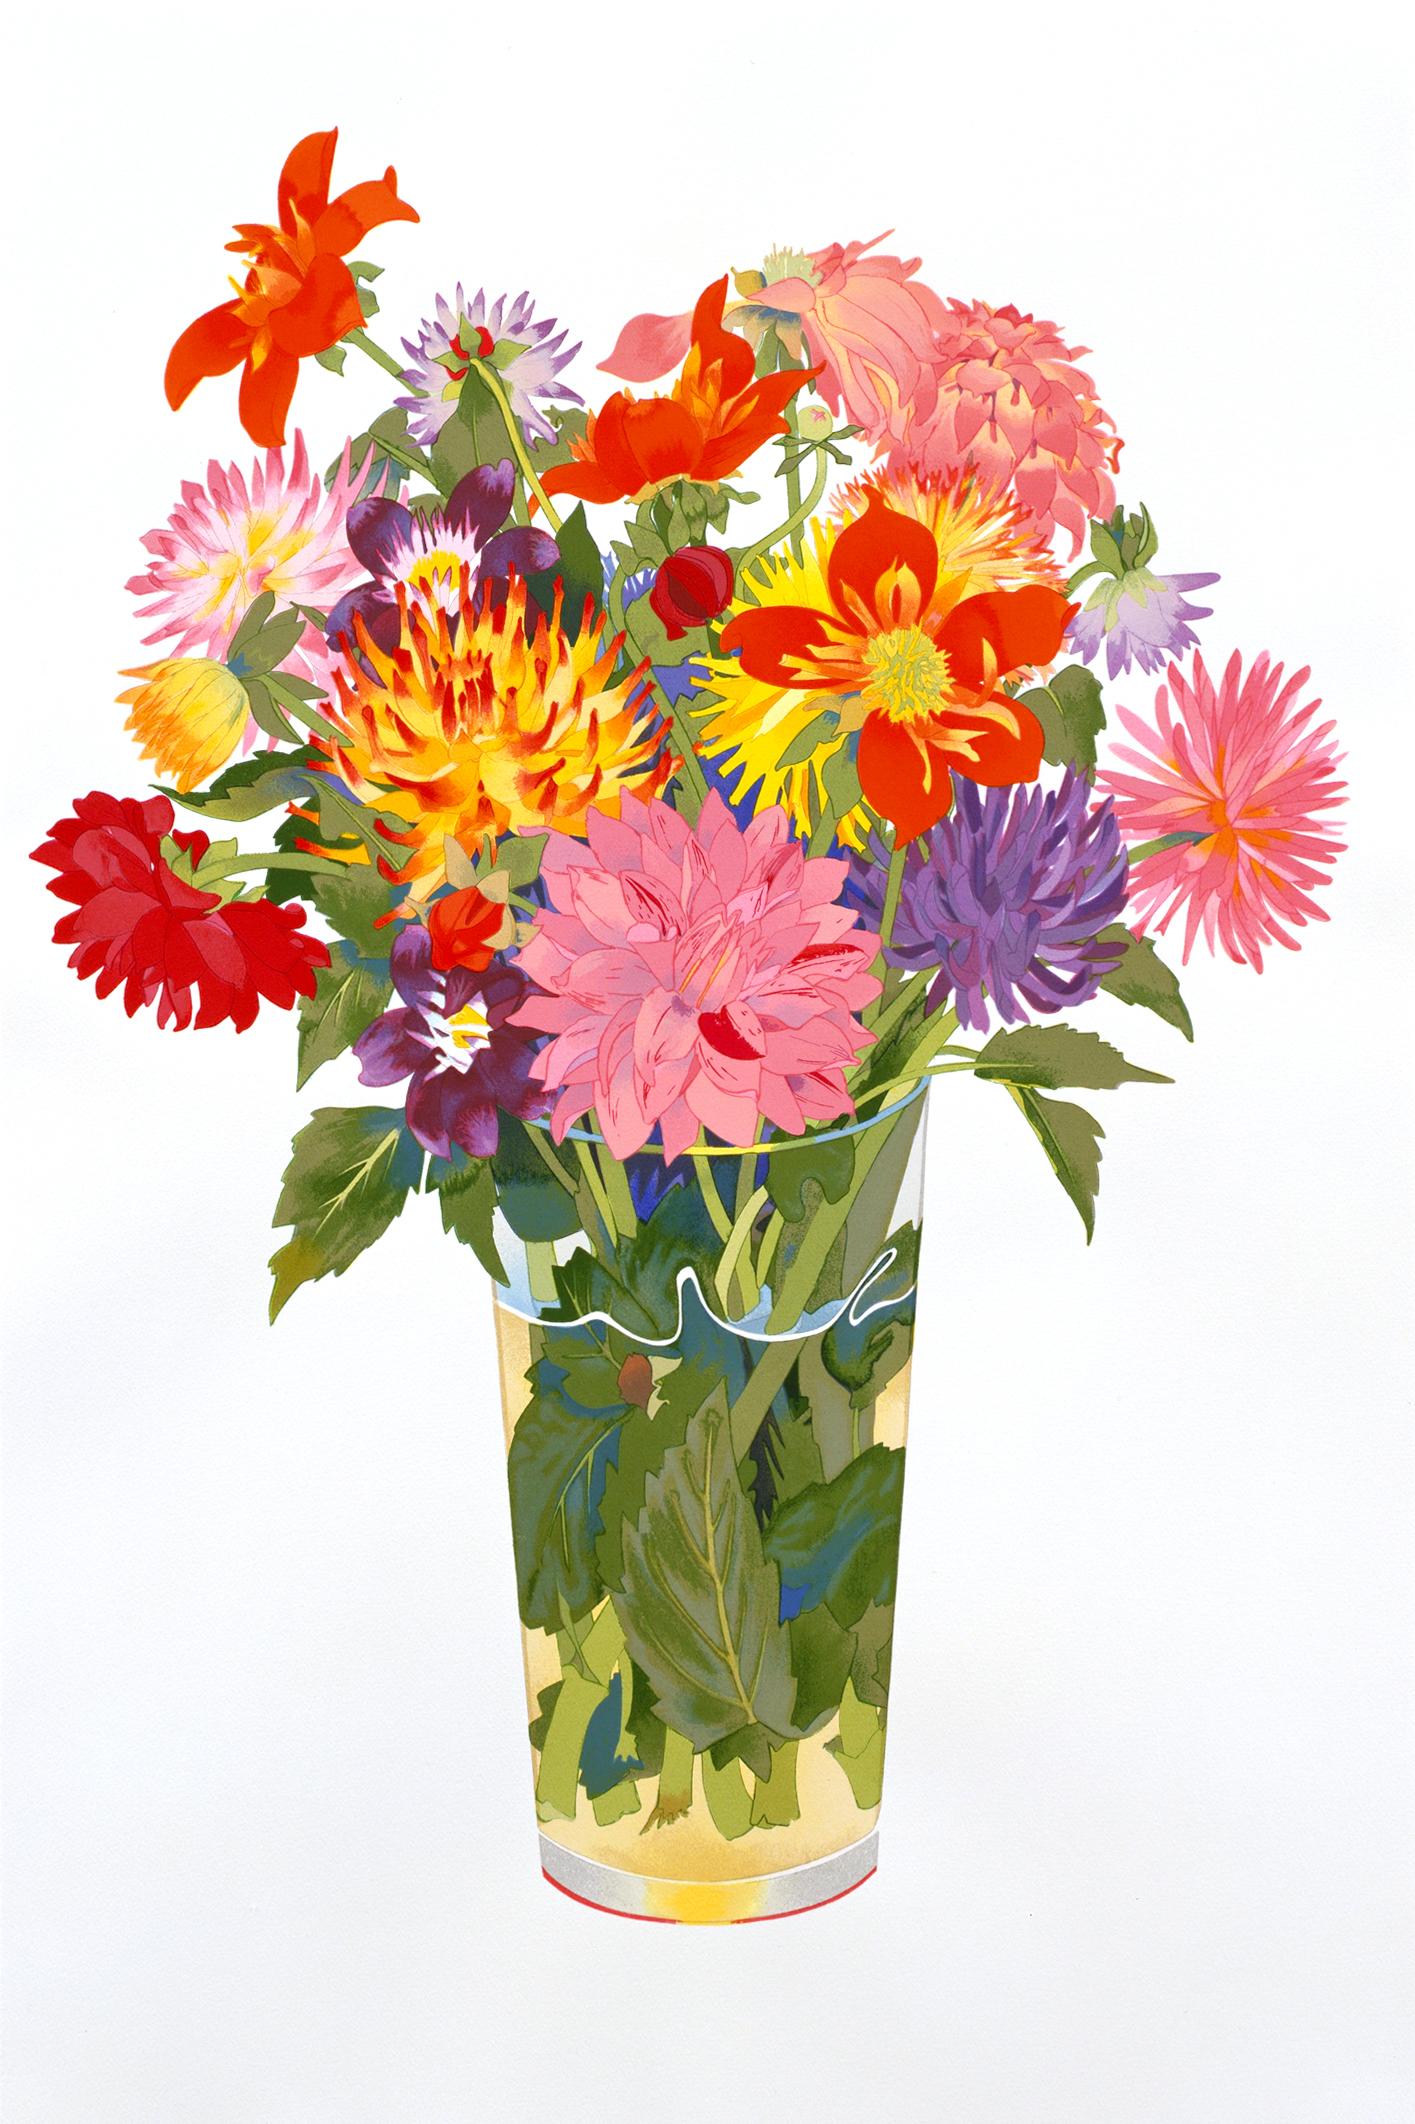 Sérigraphie Dahlias de Gary Bukovnik, 2001 (bouquet de fleurs dans un vase)